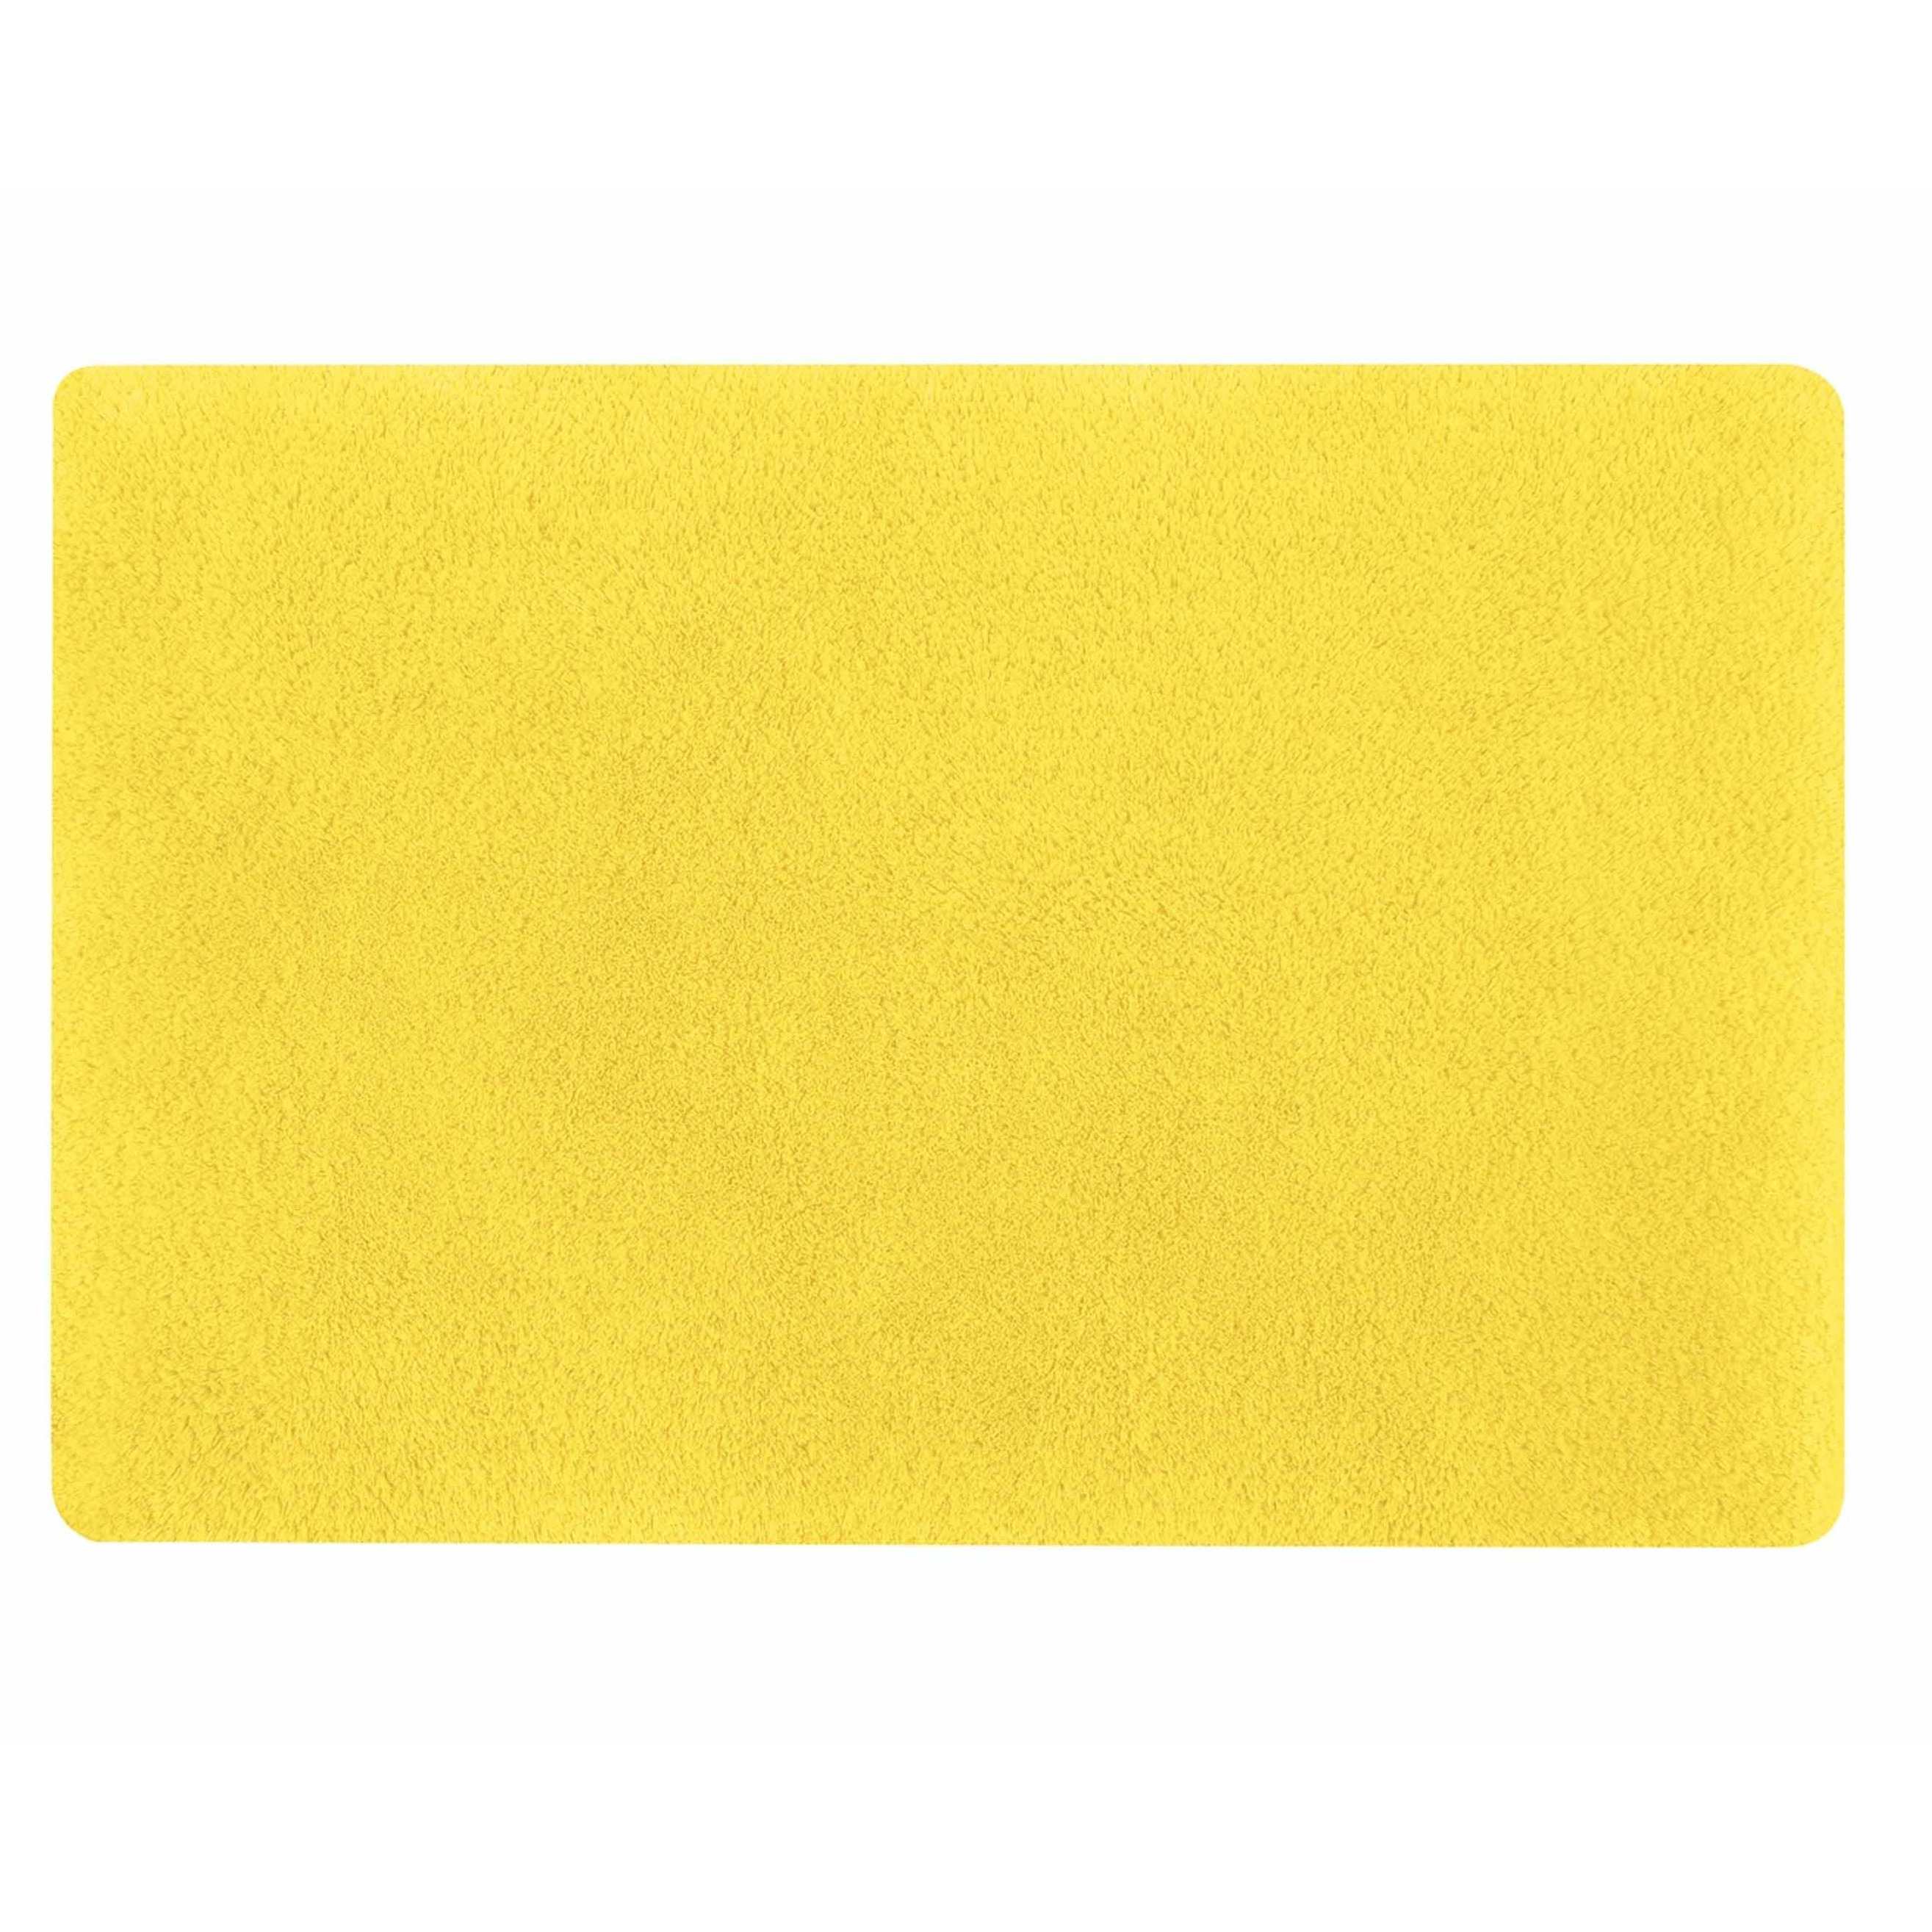 Spirella badkamer vloer kleedje-badmat tapijt hoogpolig en luxe uitvoering geel 50 x 80